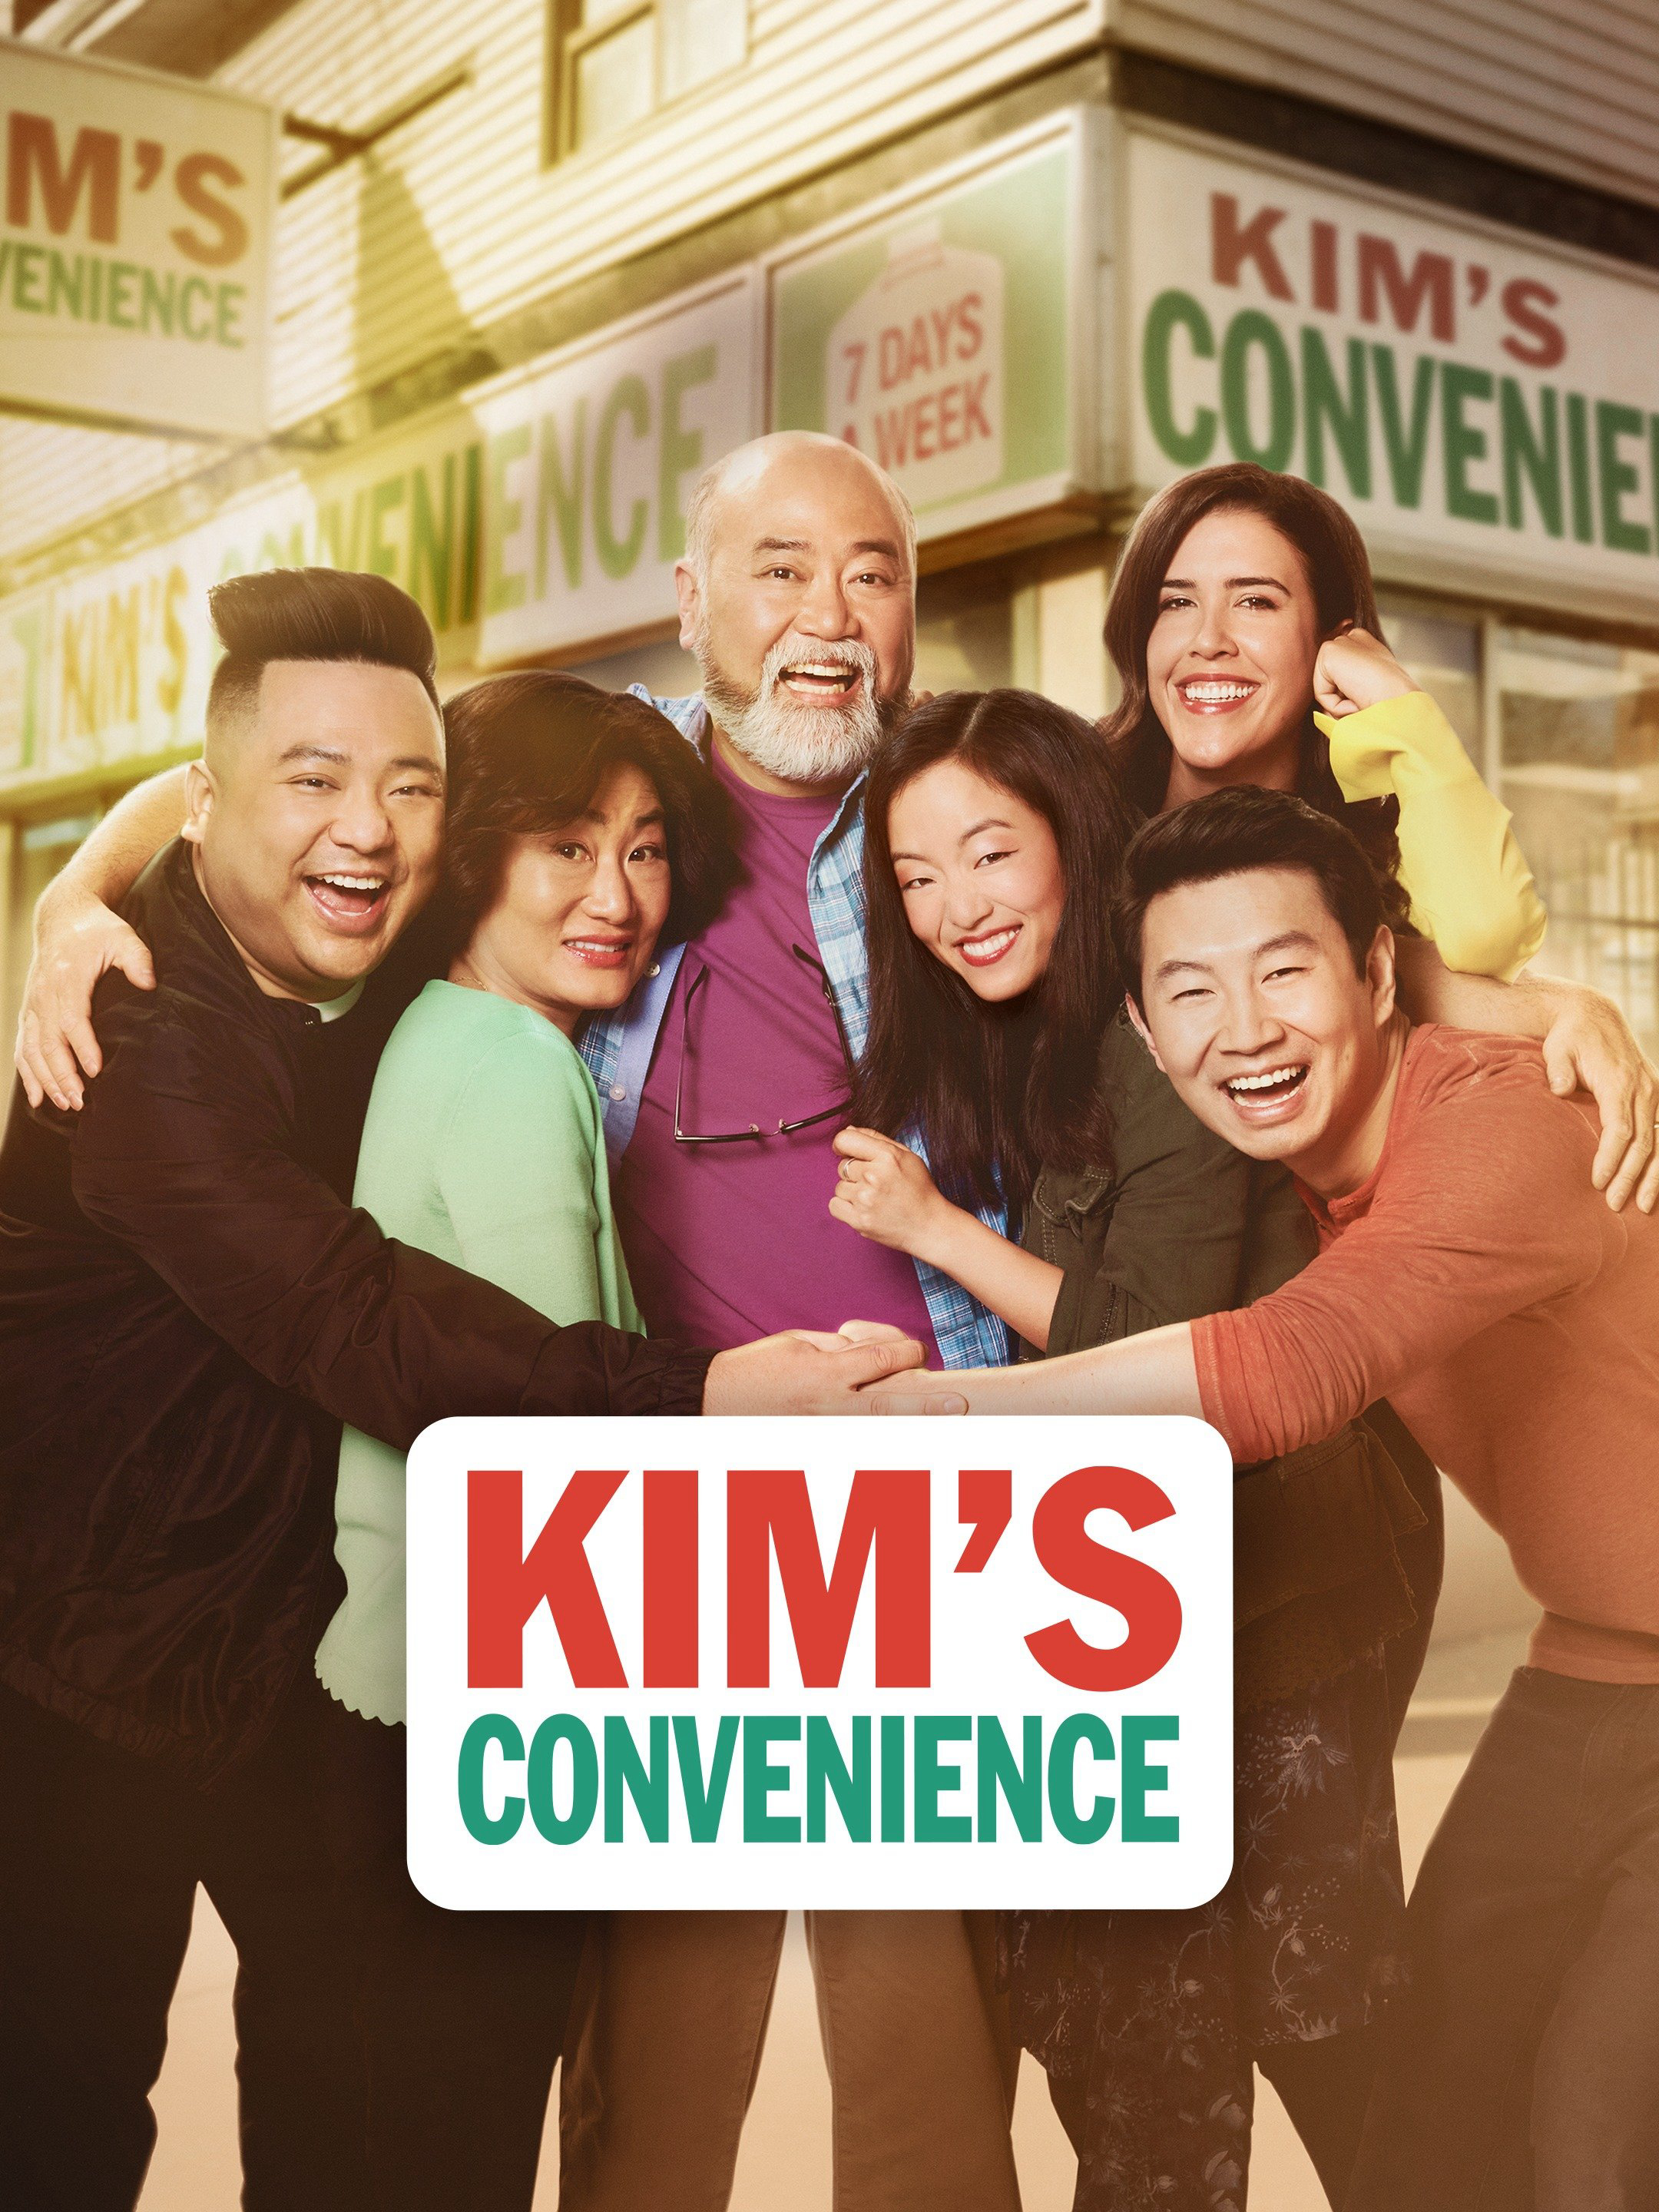 Cửa hàng tiện lợi nhà Kim (Phần 5) - Kim's Convenience (Season 5)